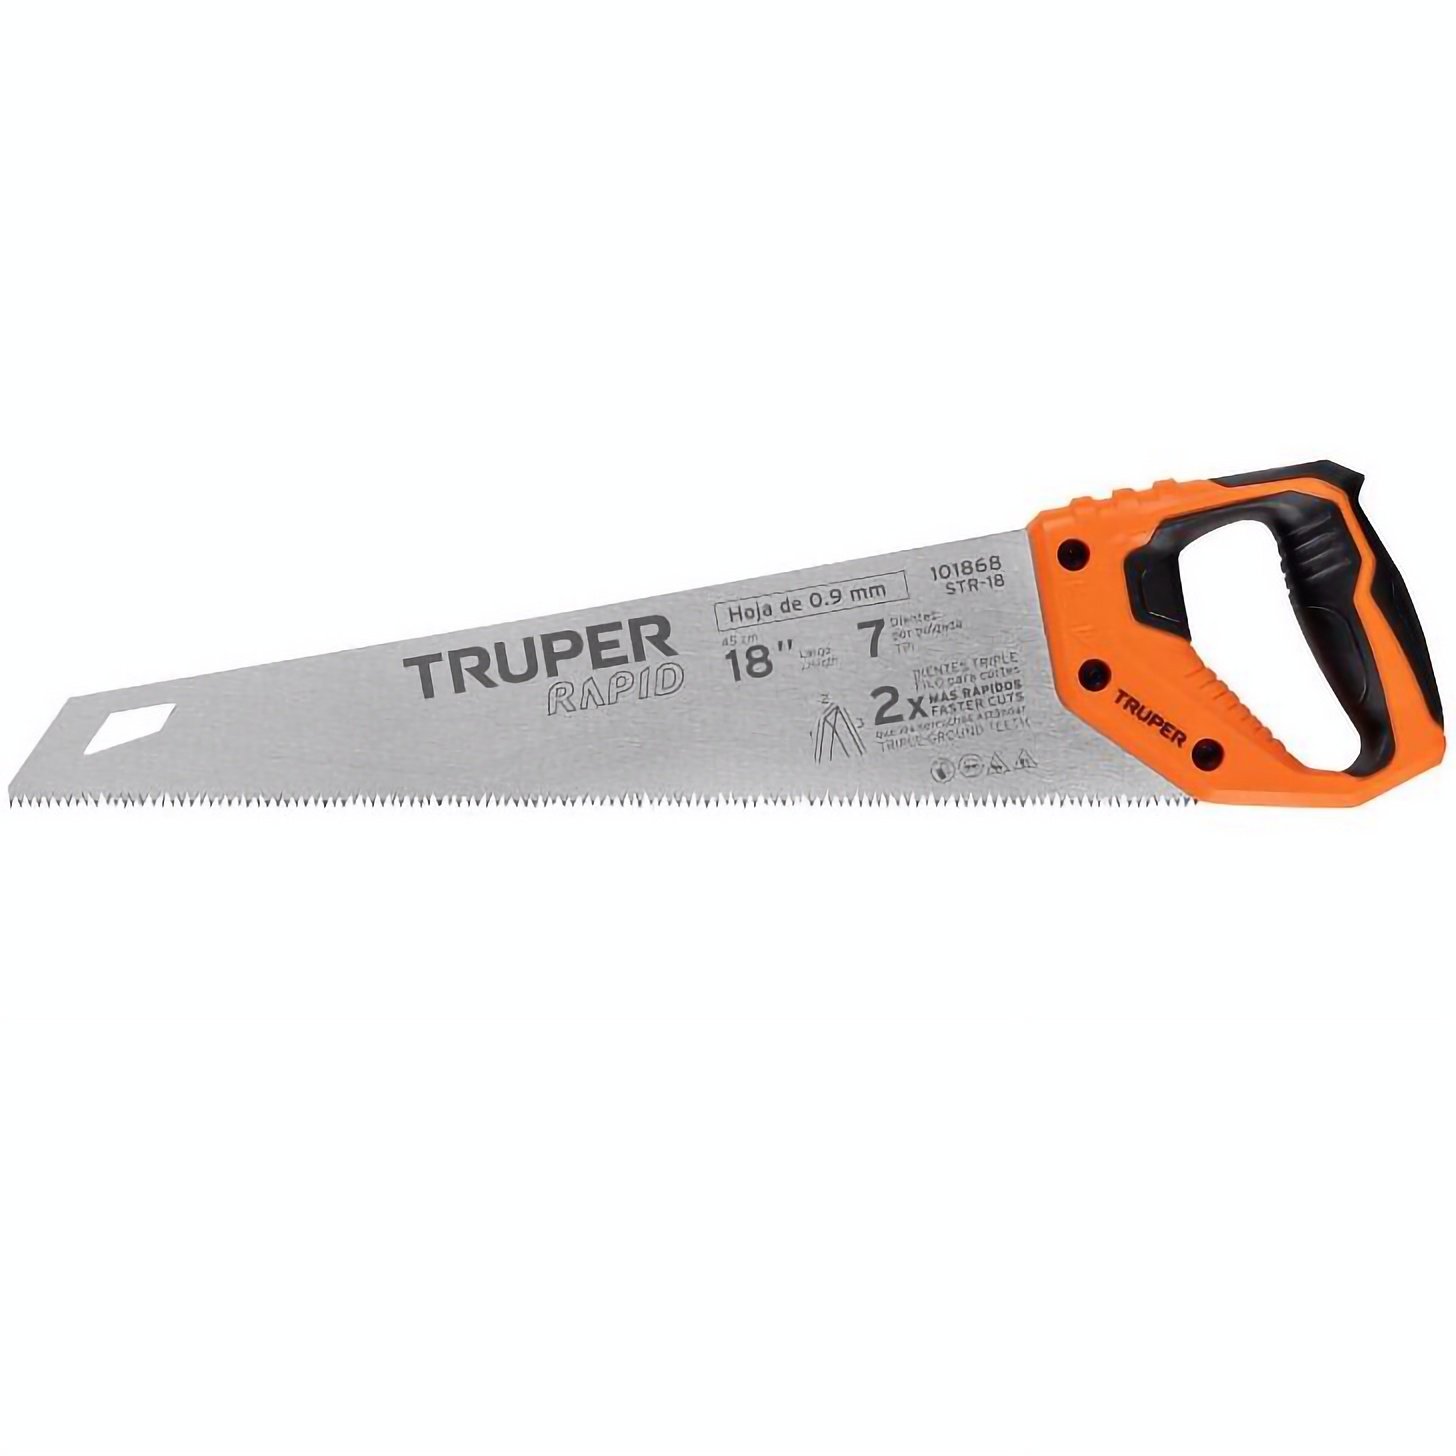 Ножовка универсальная Truper Rapid 45 см (STR-18) - фото 1